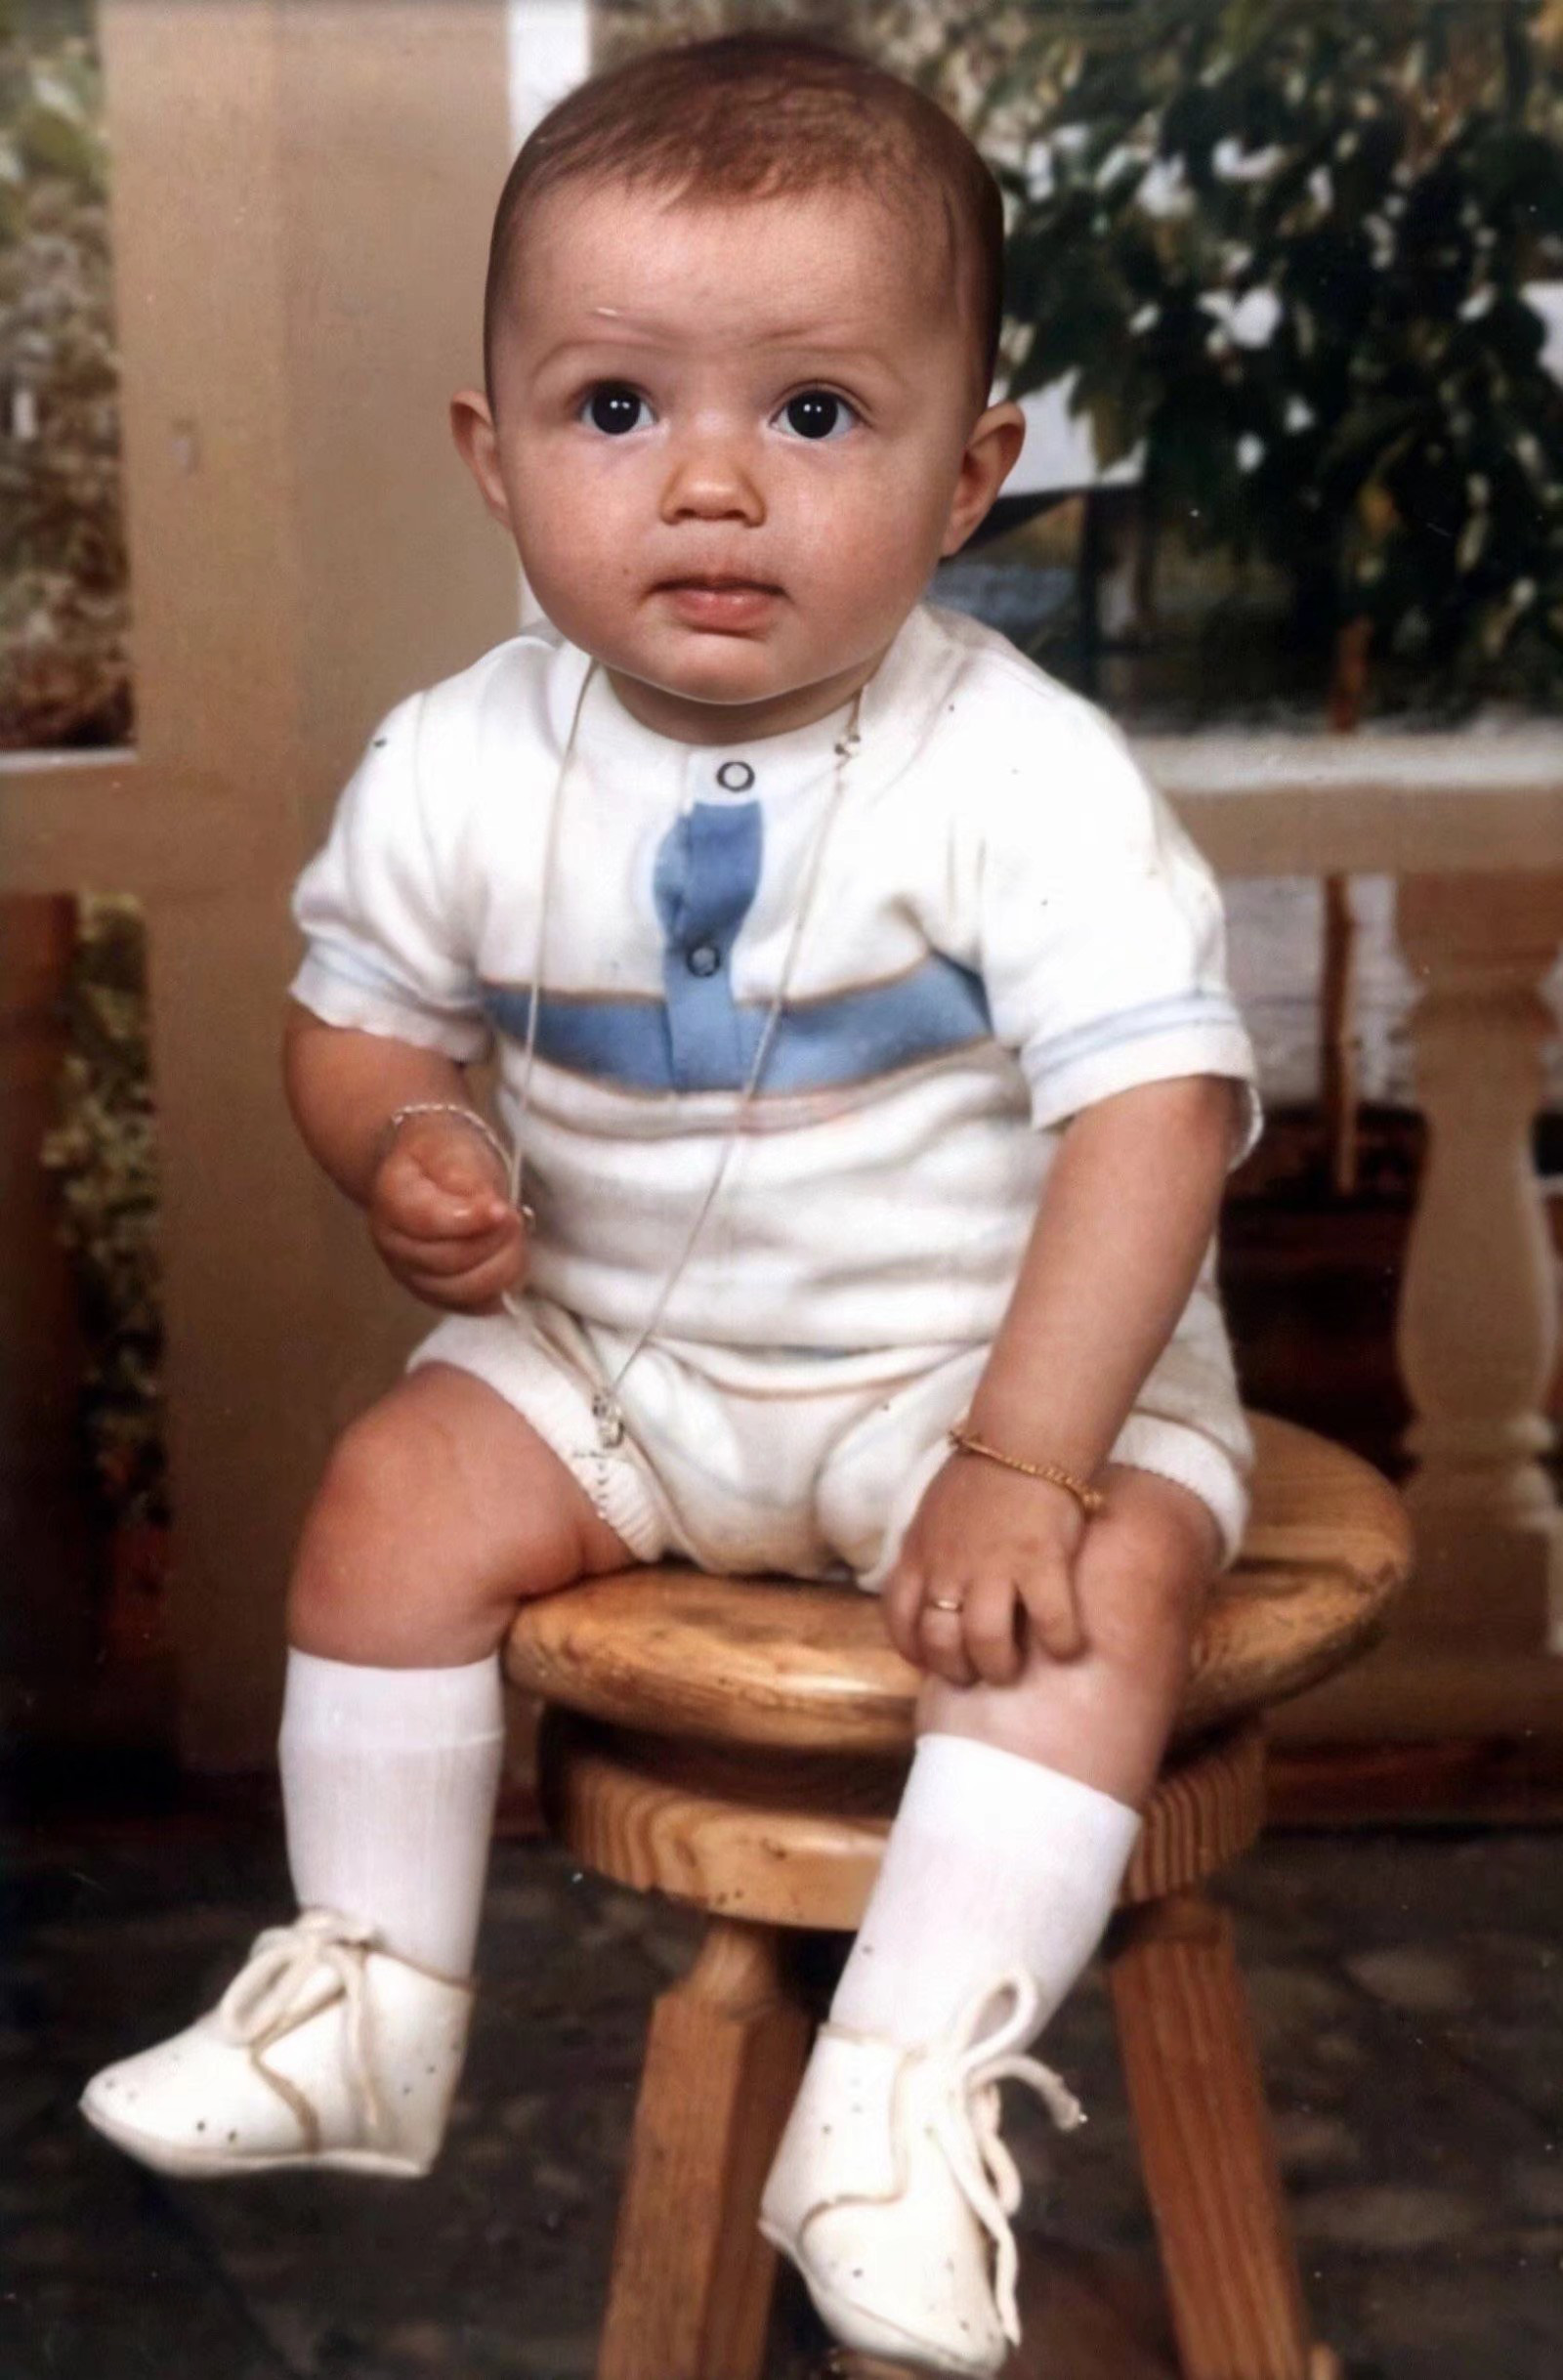 Hình thuở nhỏ của Ronaldo: Chúng tôi đem đến cho bạn những hình ảnh hiếm hoi về Cristiano Ronaldo trong thời thơ ấu. Những bức ảnh này sẽ khiến bạn ngạc nhiên vì không hề thấy Ronaldo lúc nào cũng là một chân sút vĩ đại.